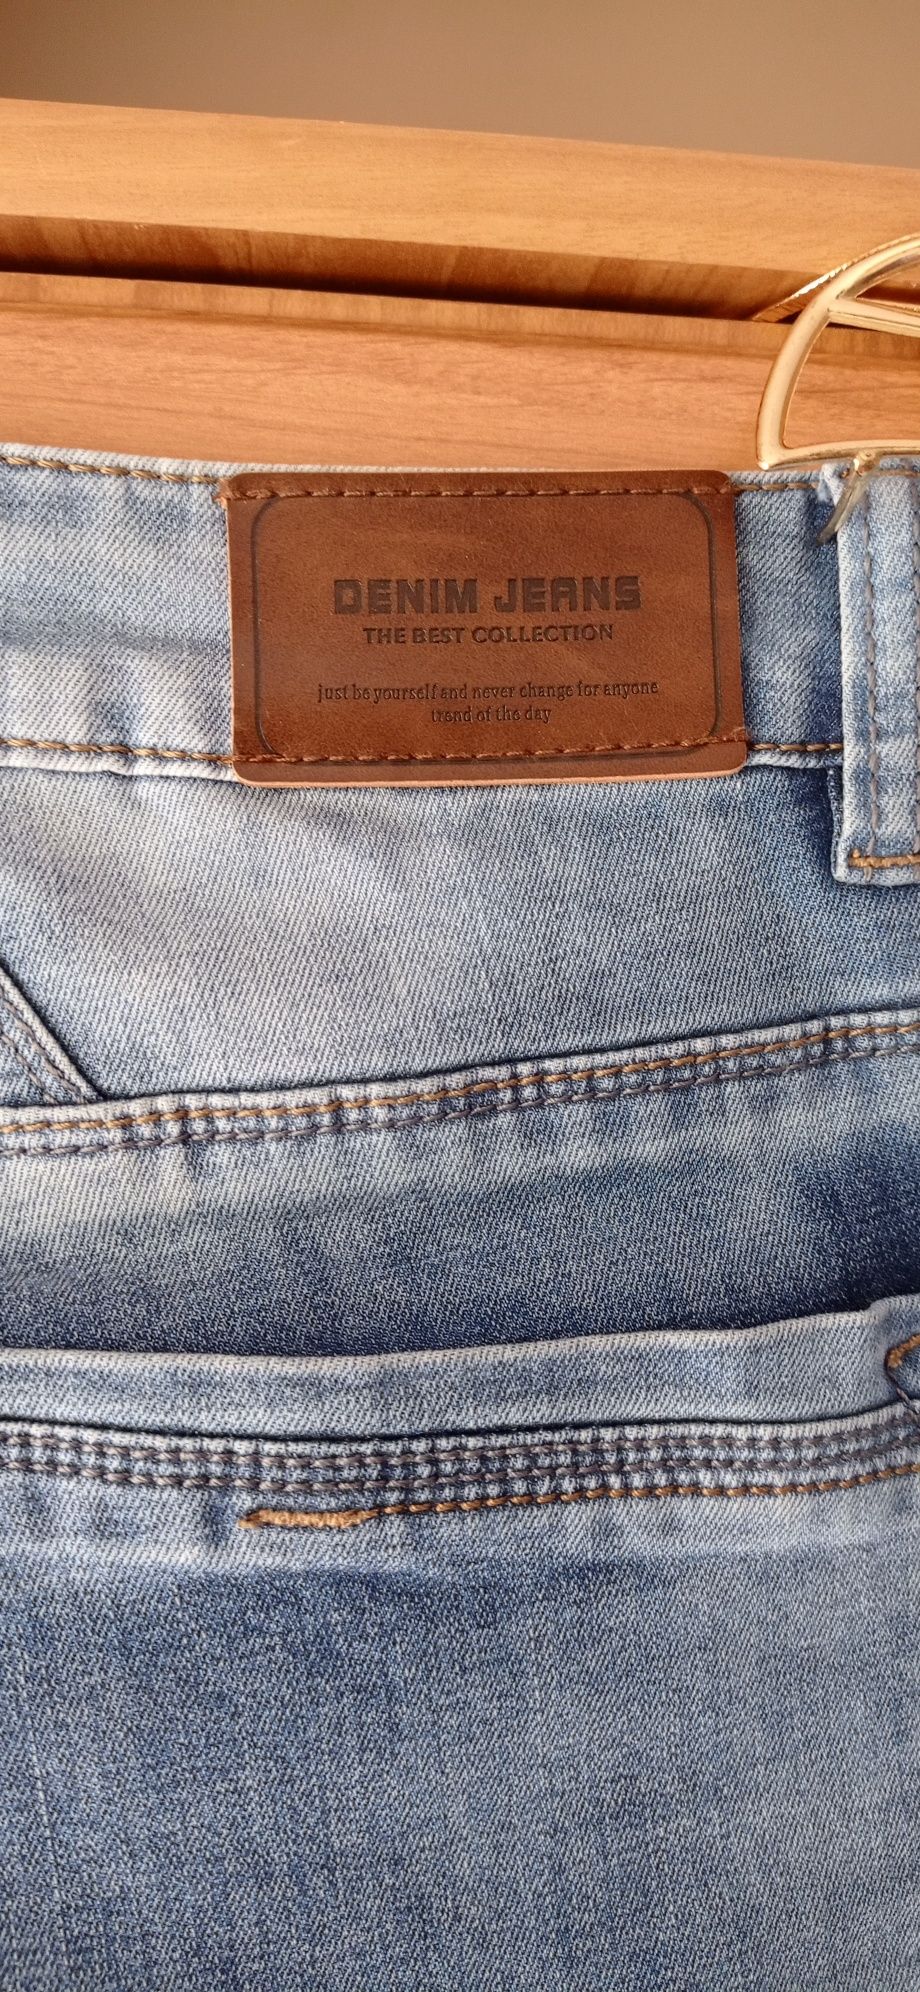 Spodnie Jeans Męskie Rozmiar 38 W 38 L 34 Obwód w pasie 98 cm